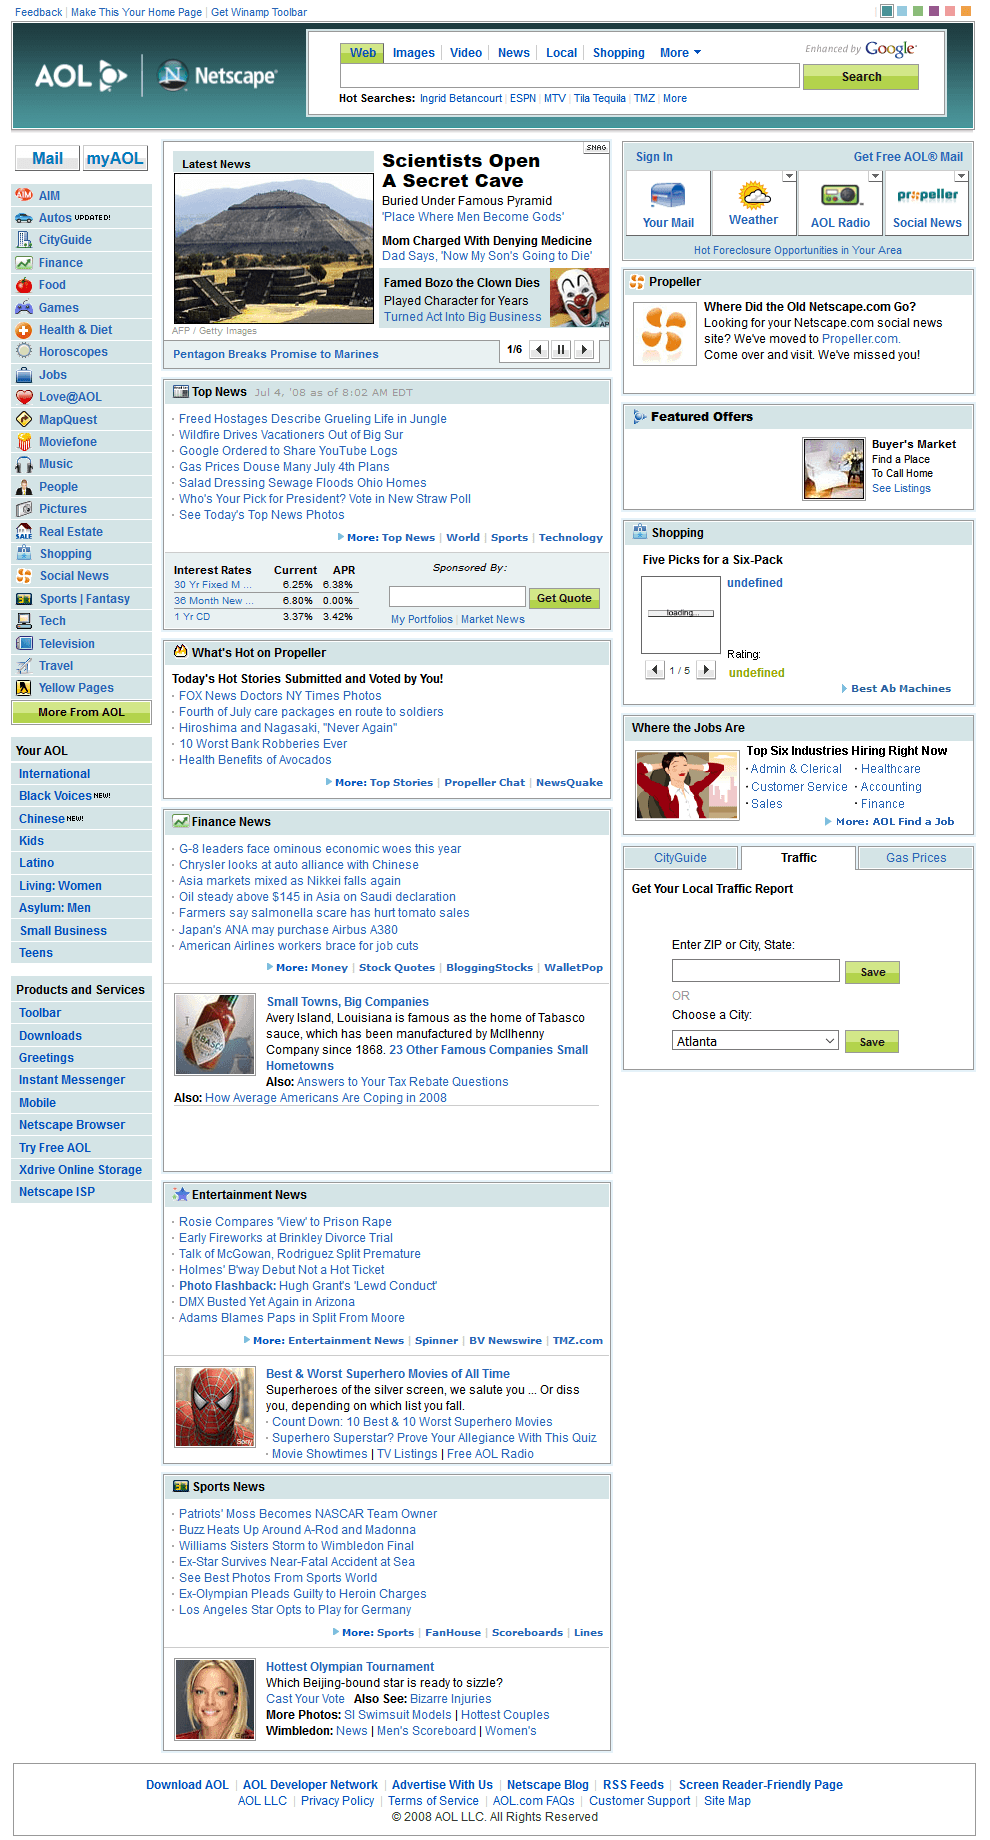 Netscape website in 2008